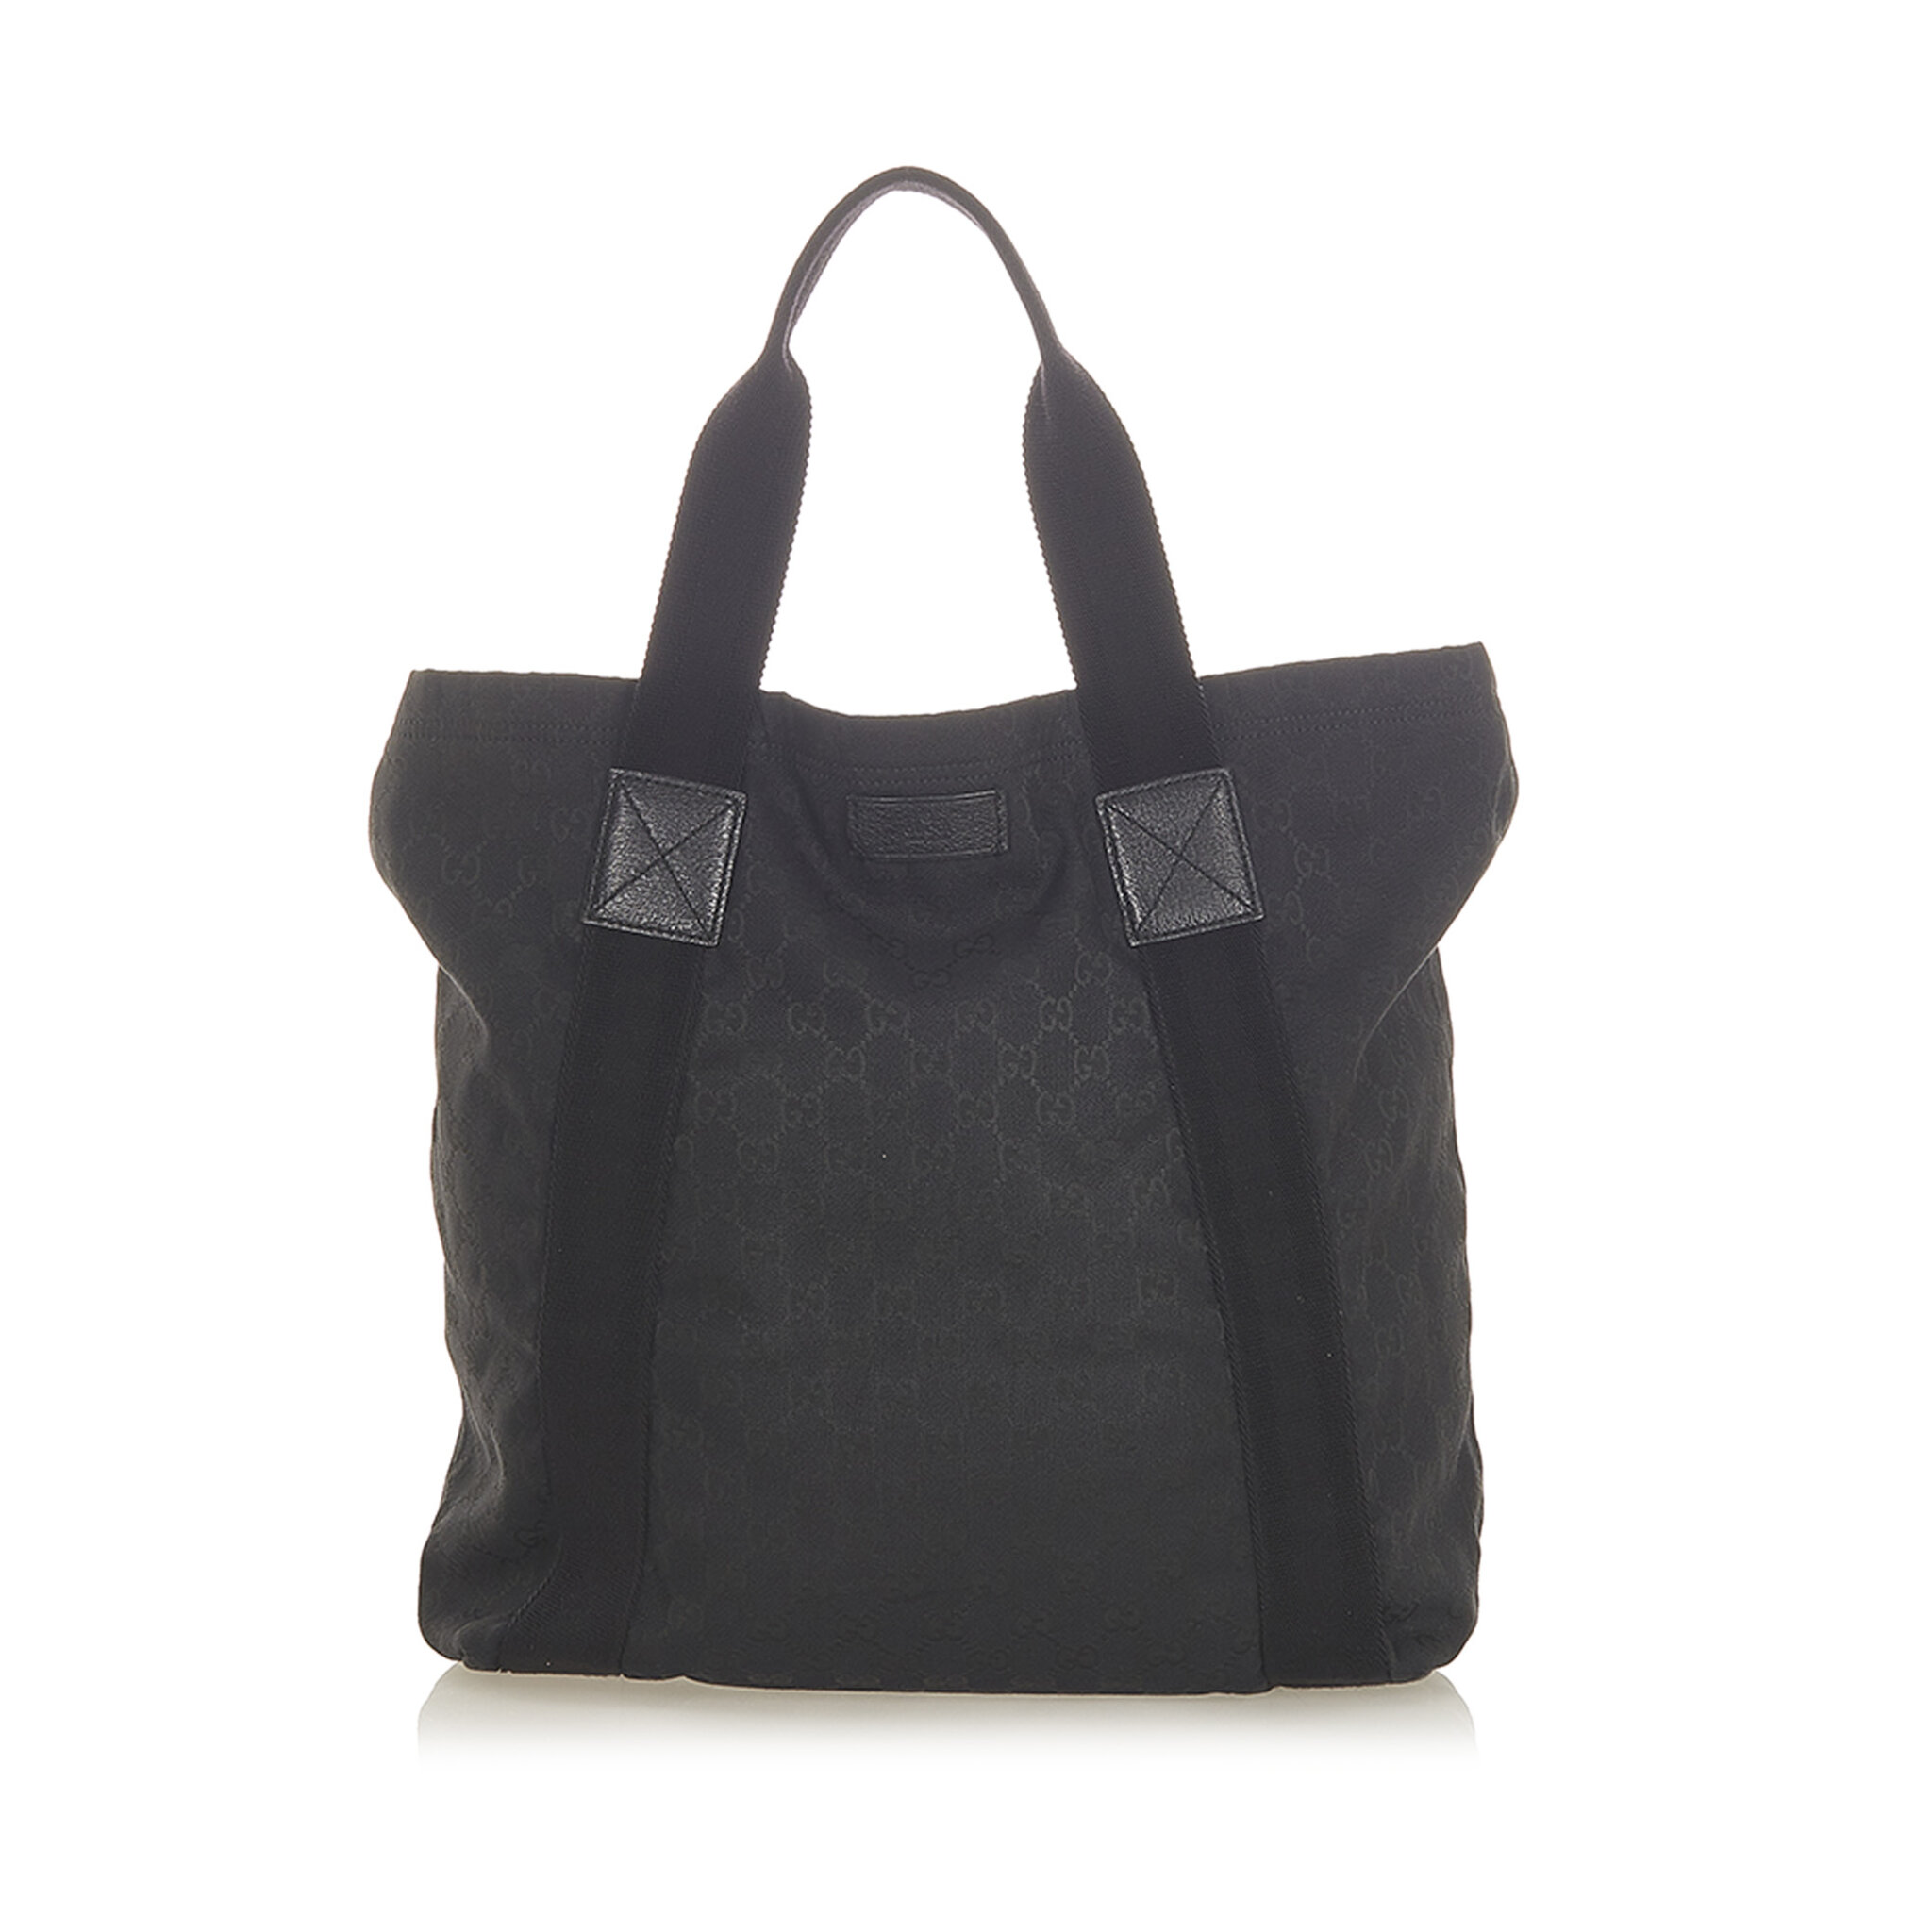 Gucci Gg Canvas Web Tote Bag, black